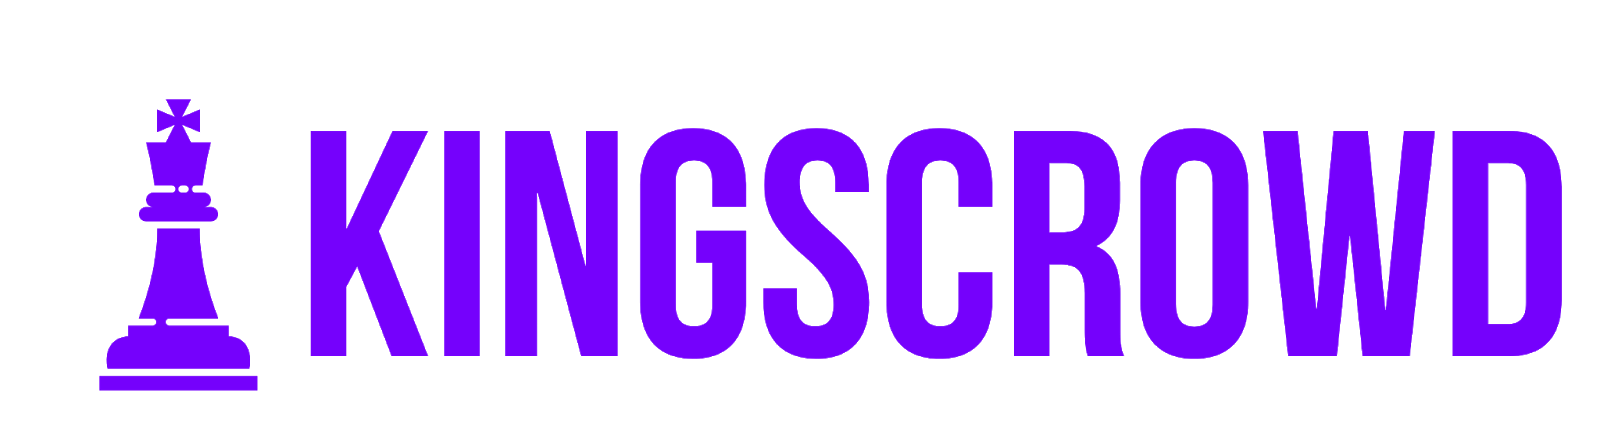 KingsCrowd Logo.png